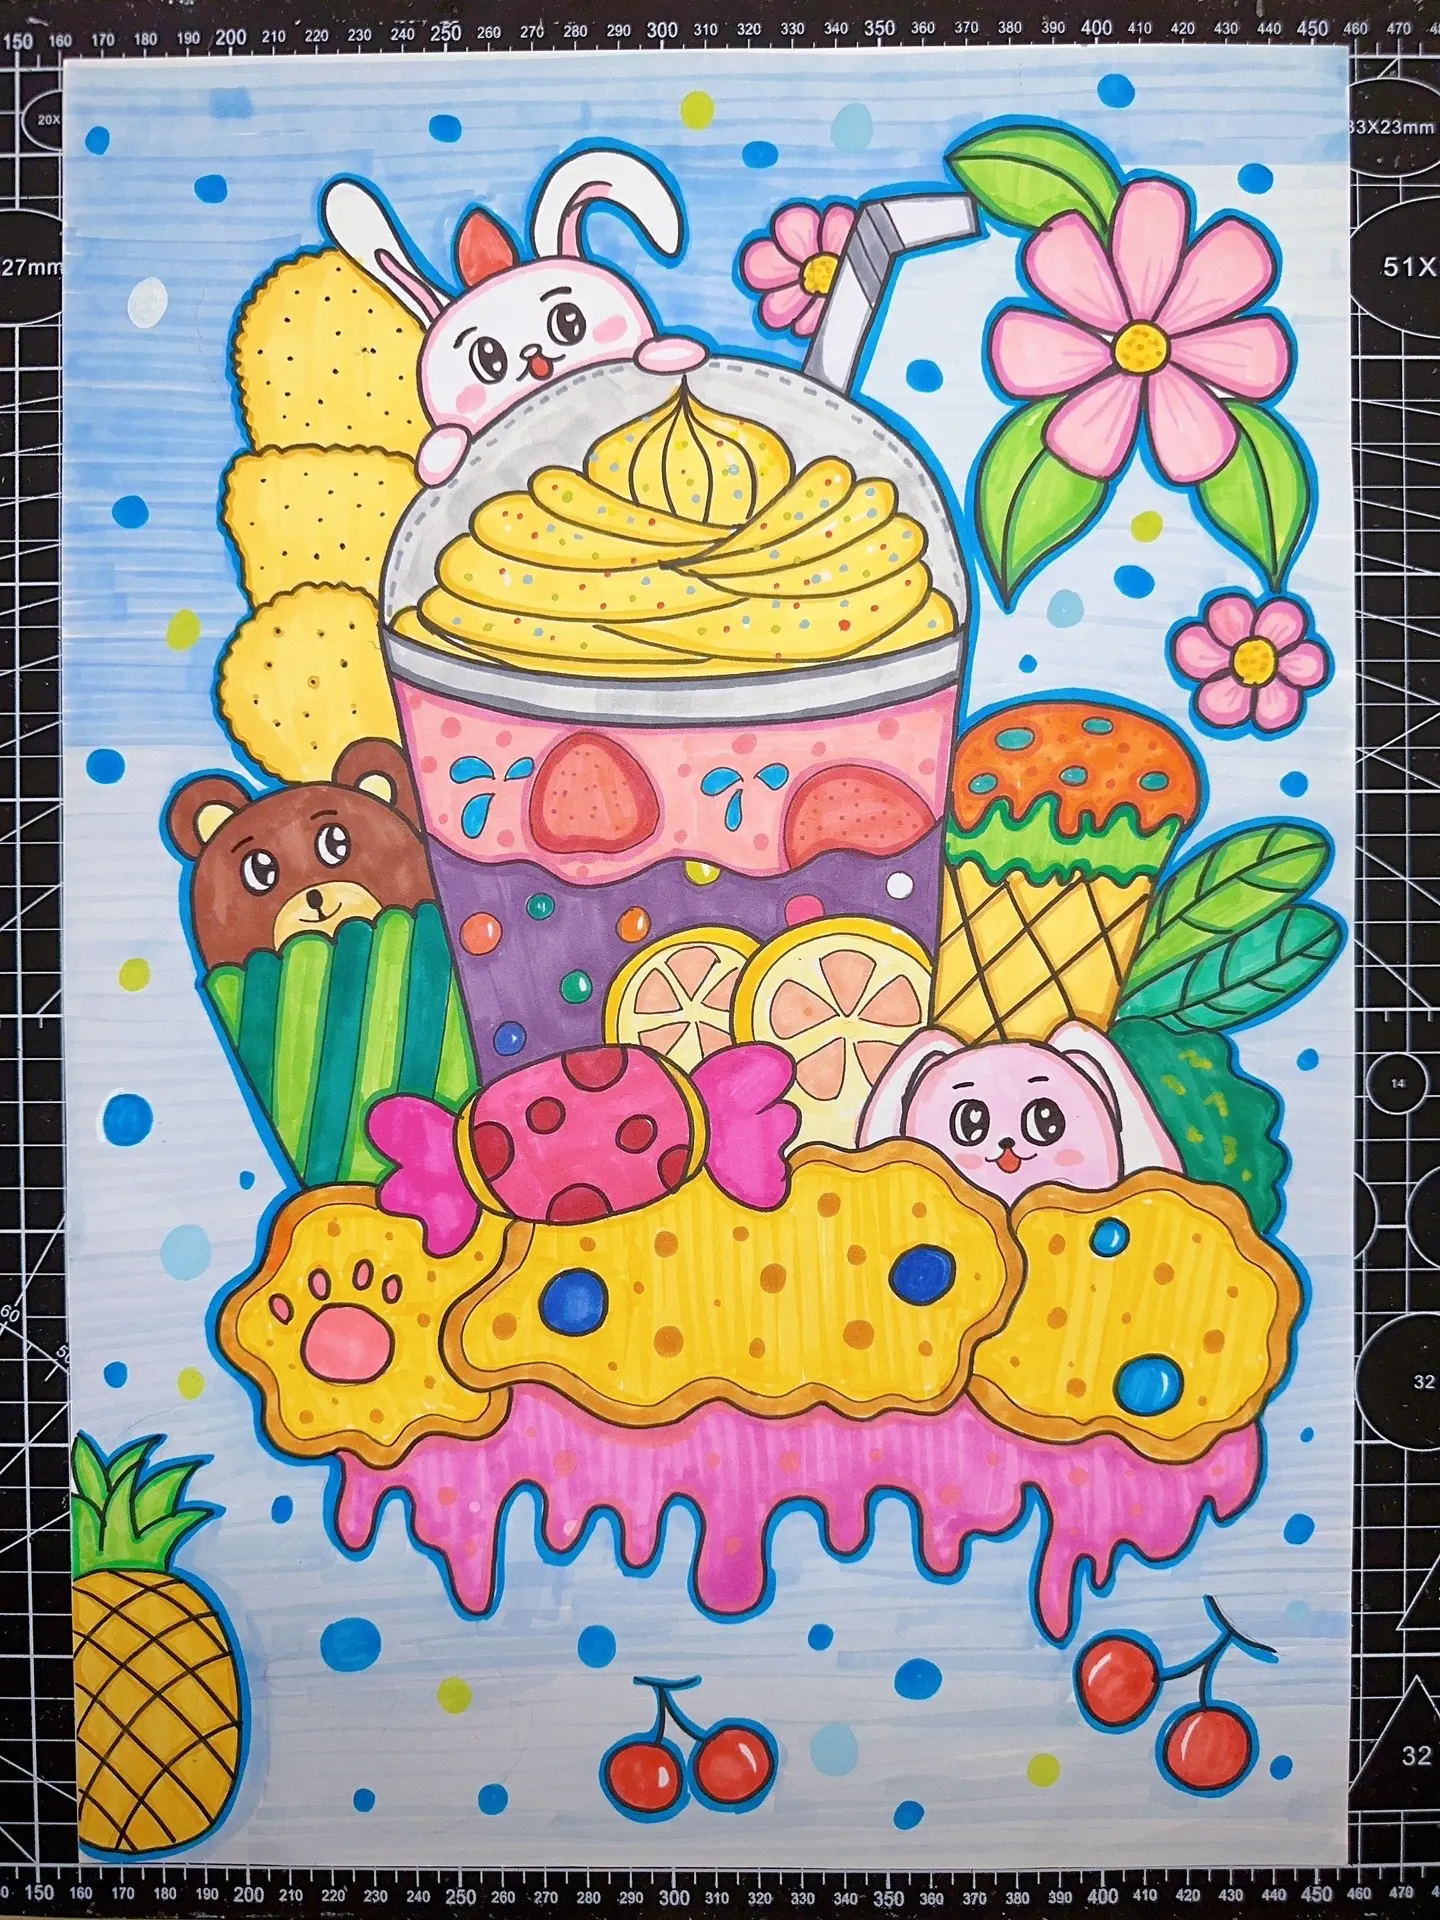 夏天来啦，冷饮，冰淇淋。 简笔画 - 高清图片，堆糖，美图壁纸兴趣社区